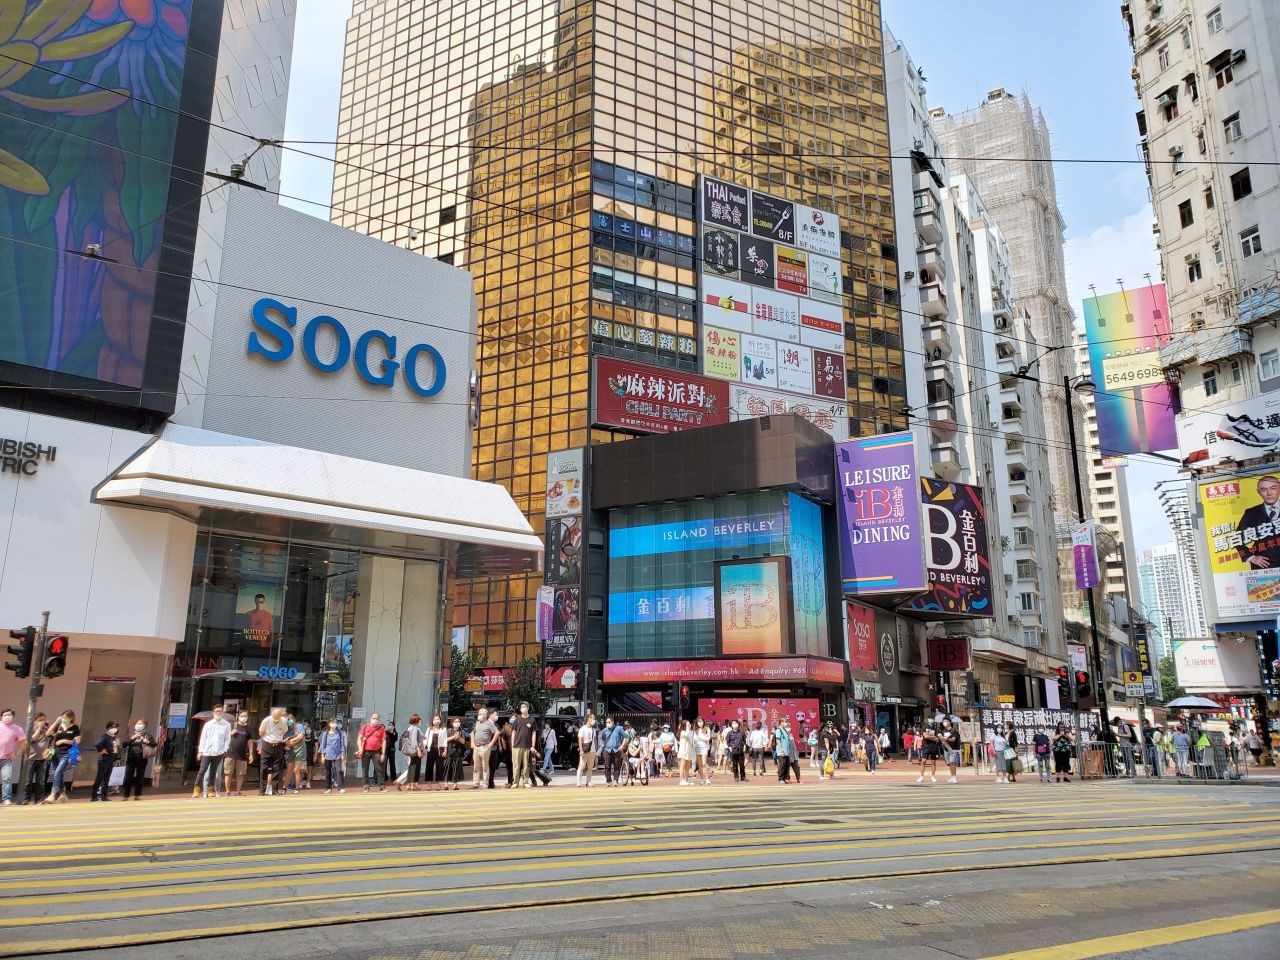 Pemerintah Hong Kong Membuka Kembali Beberapa Sekor Bisnis Mulai Pada Tanggal 8 Mei 2020